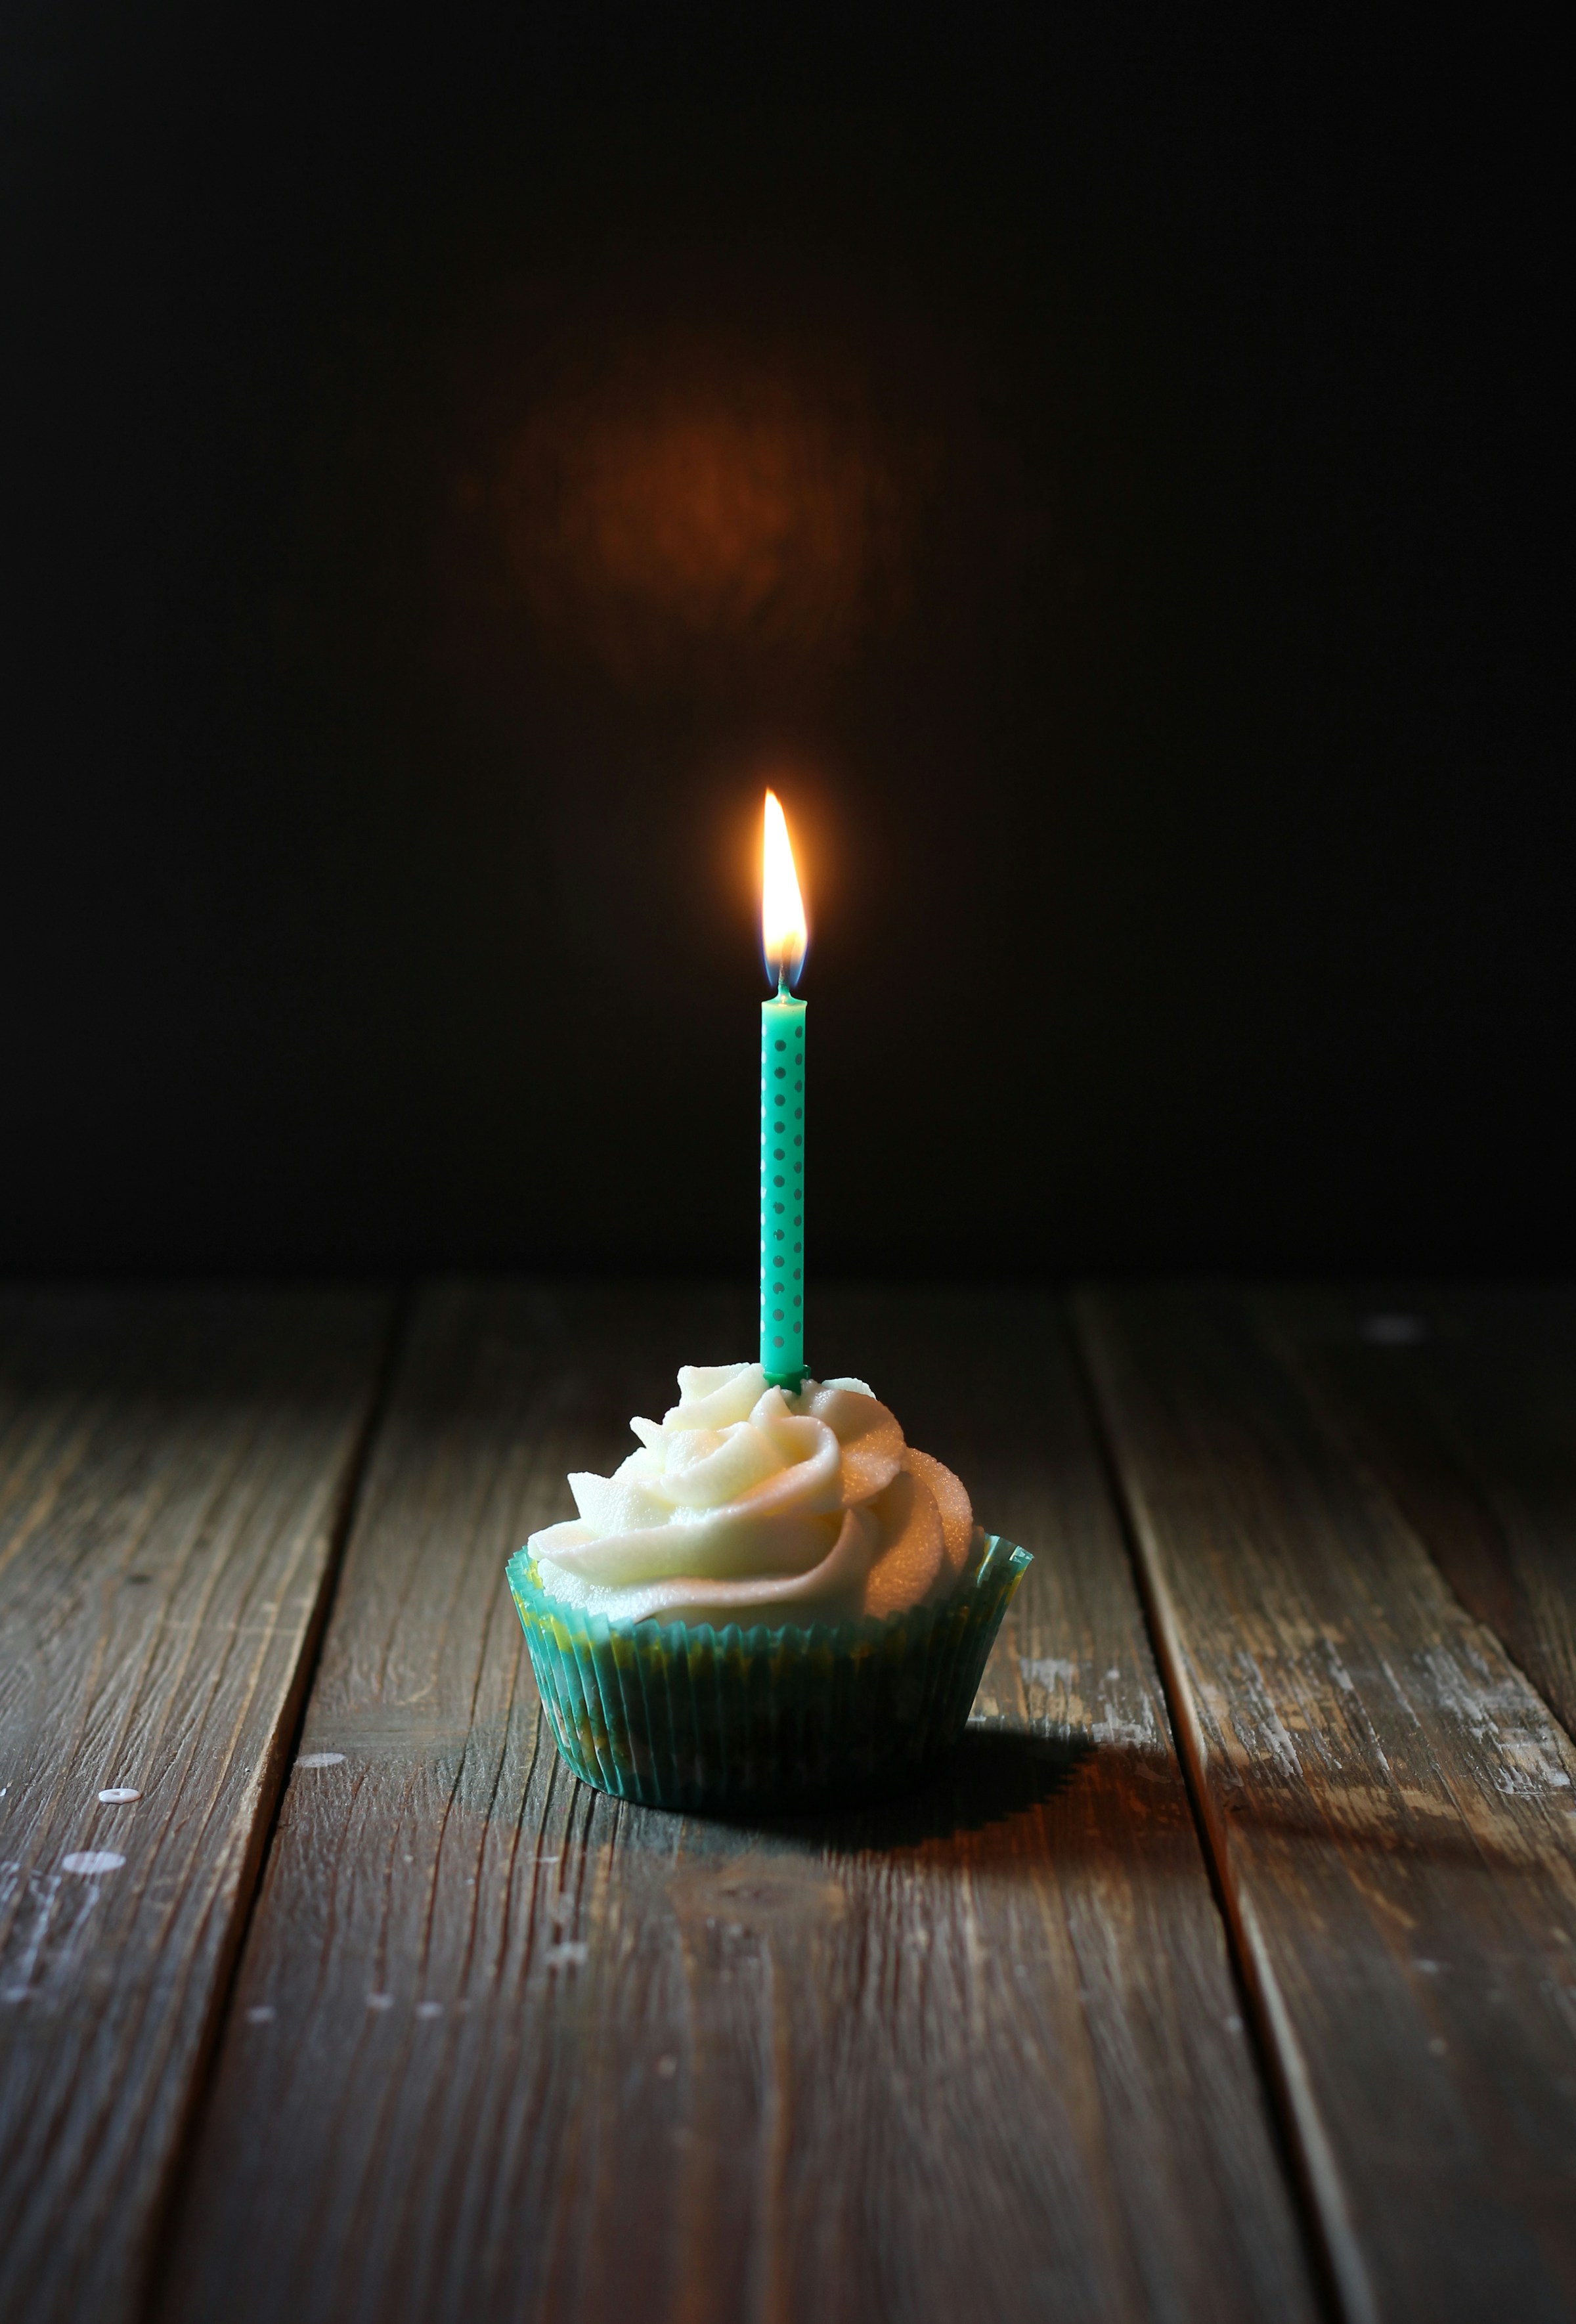 Ein Cupcake mit einer Kerze | Quelle: Unsplash